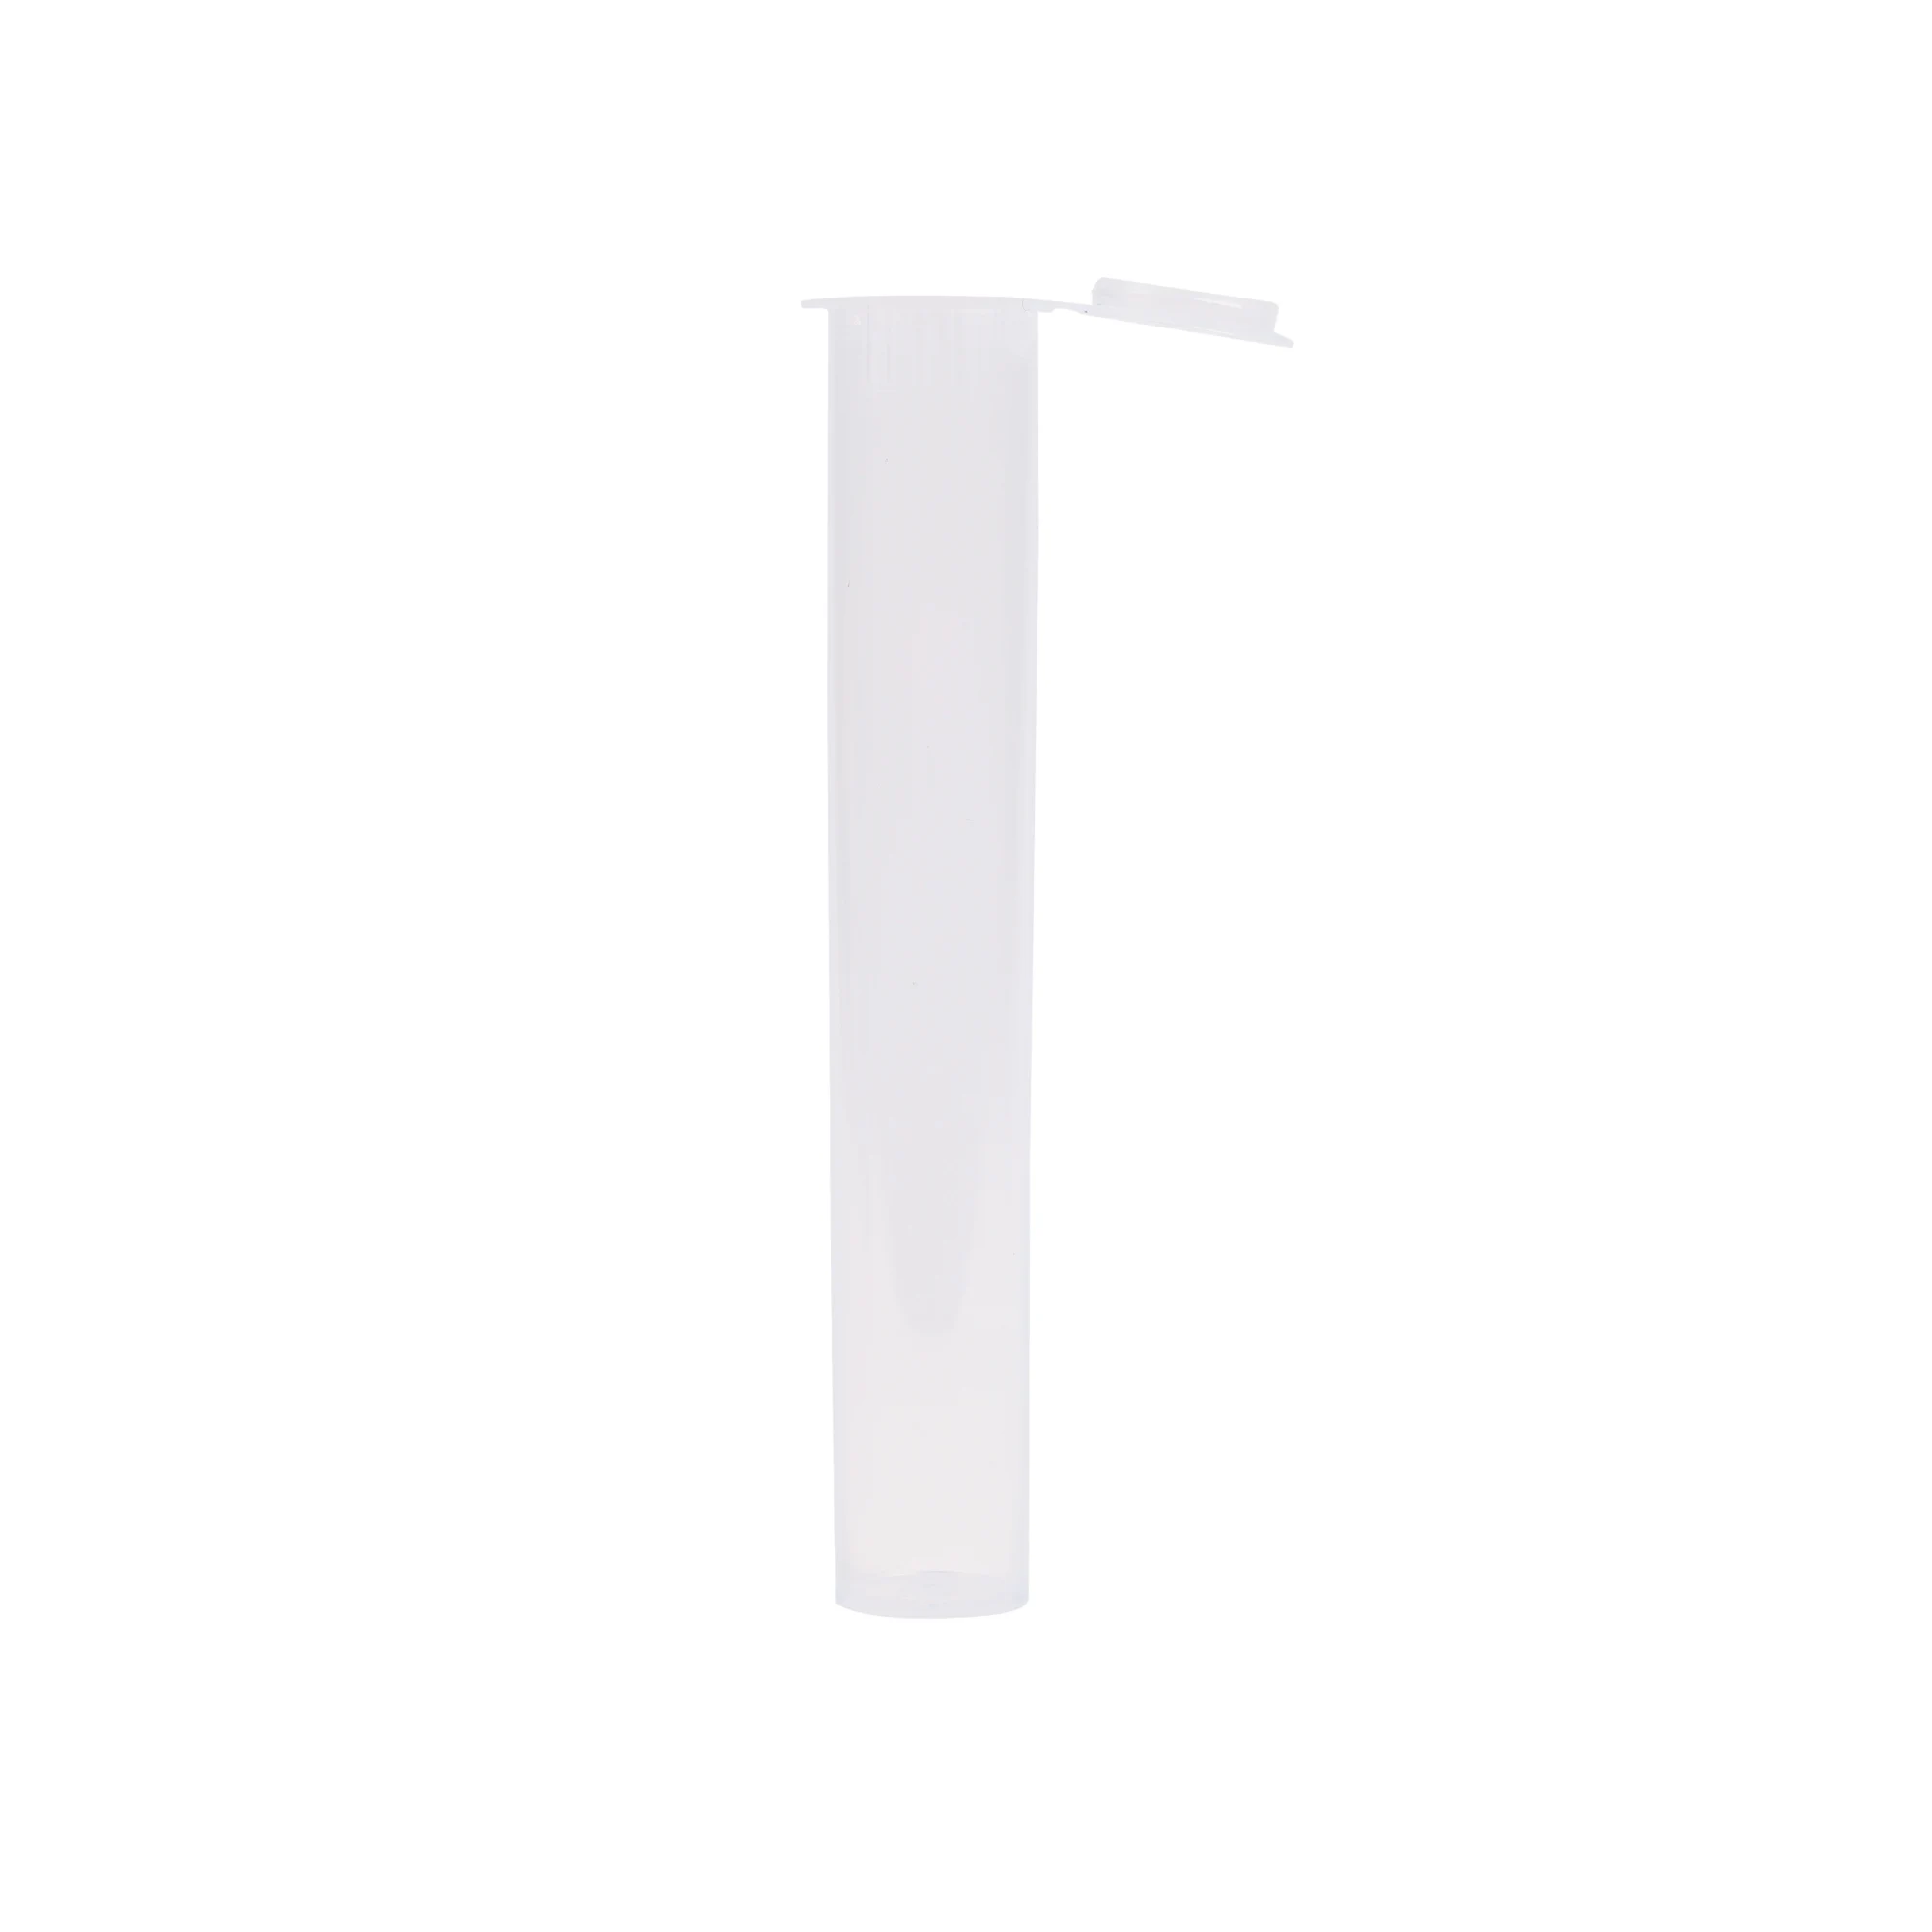 Plastic-tube-white